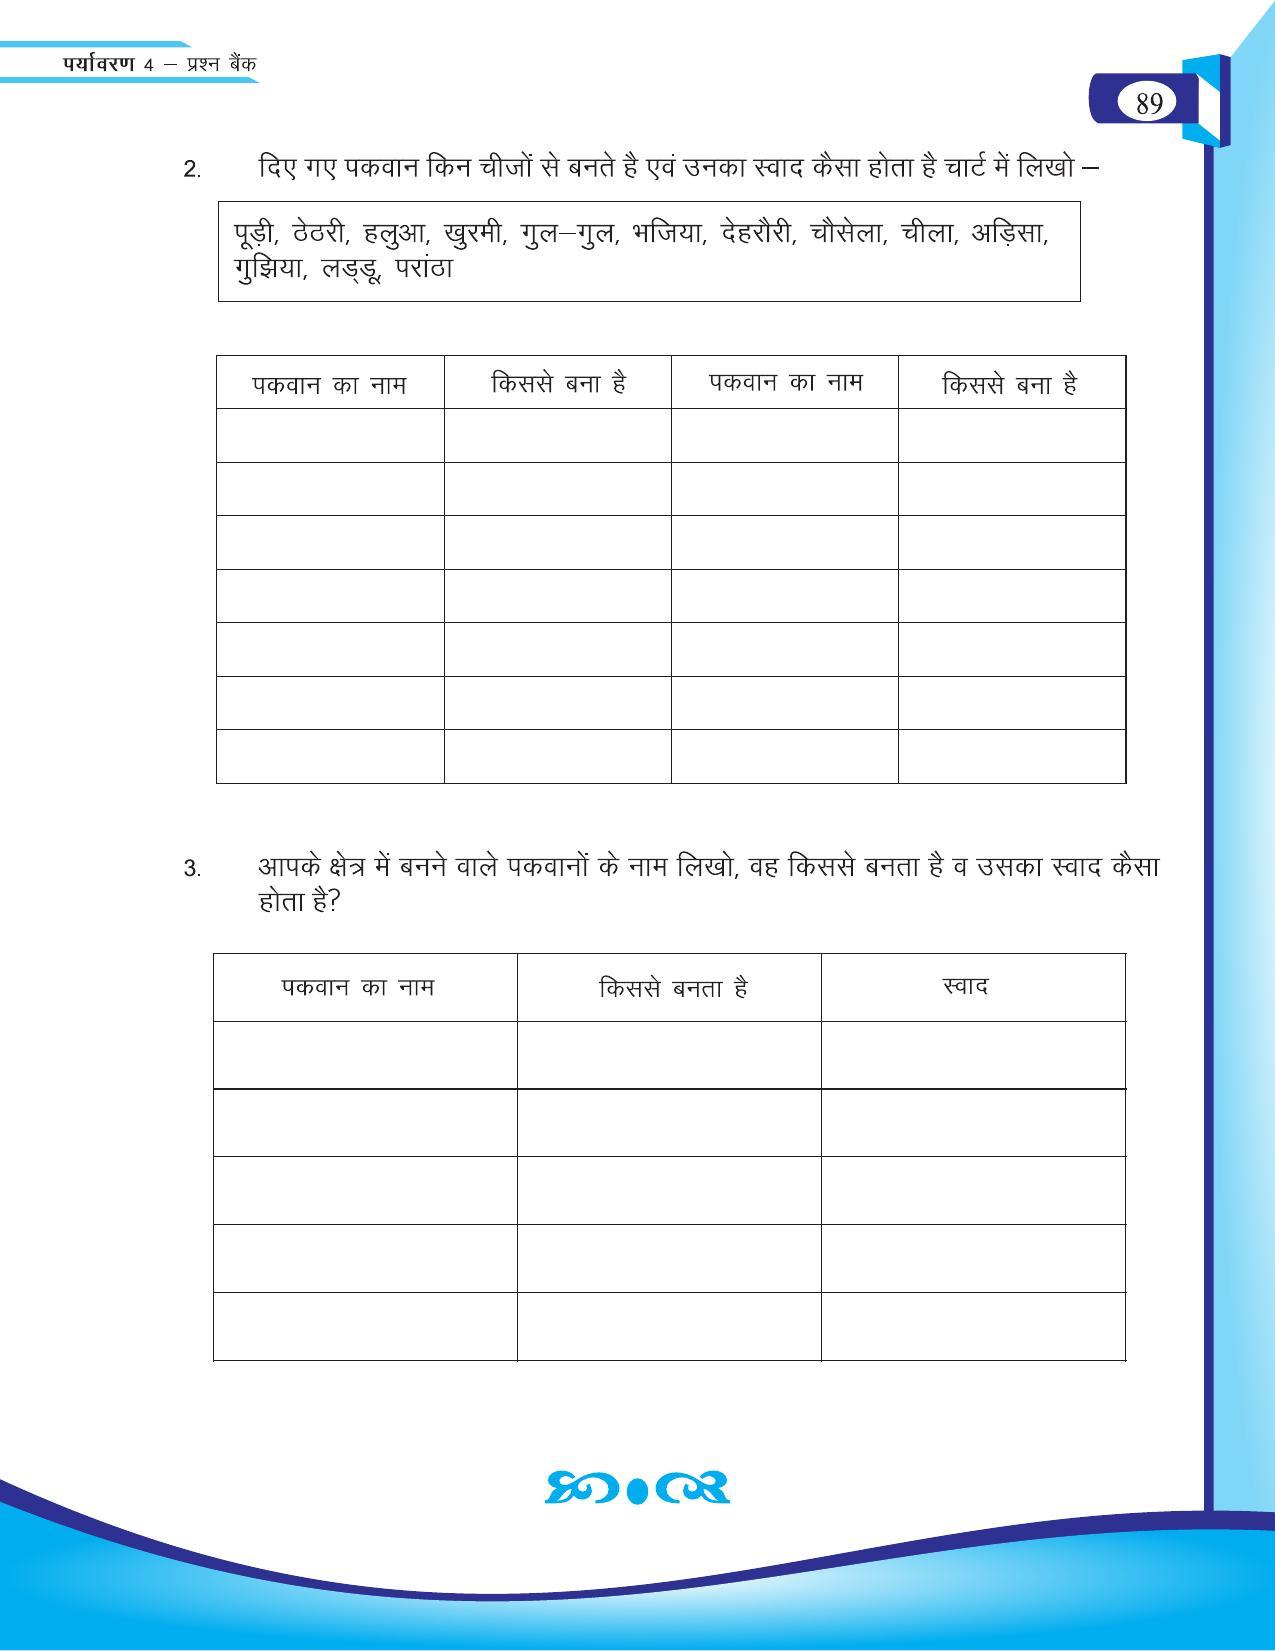 Chhattisgarh Board Class 4 EVS Question Bank 2015-16 - Page 18